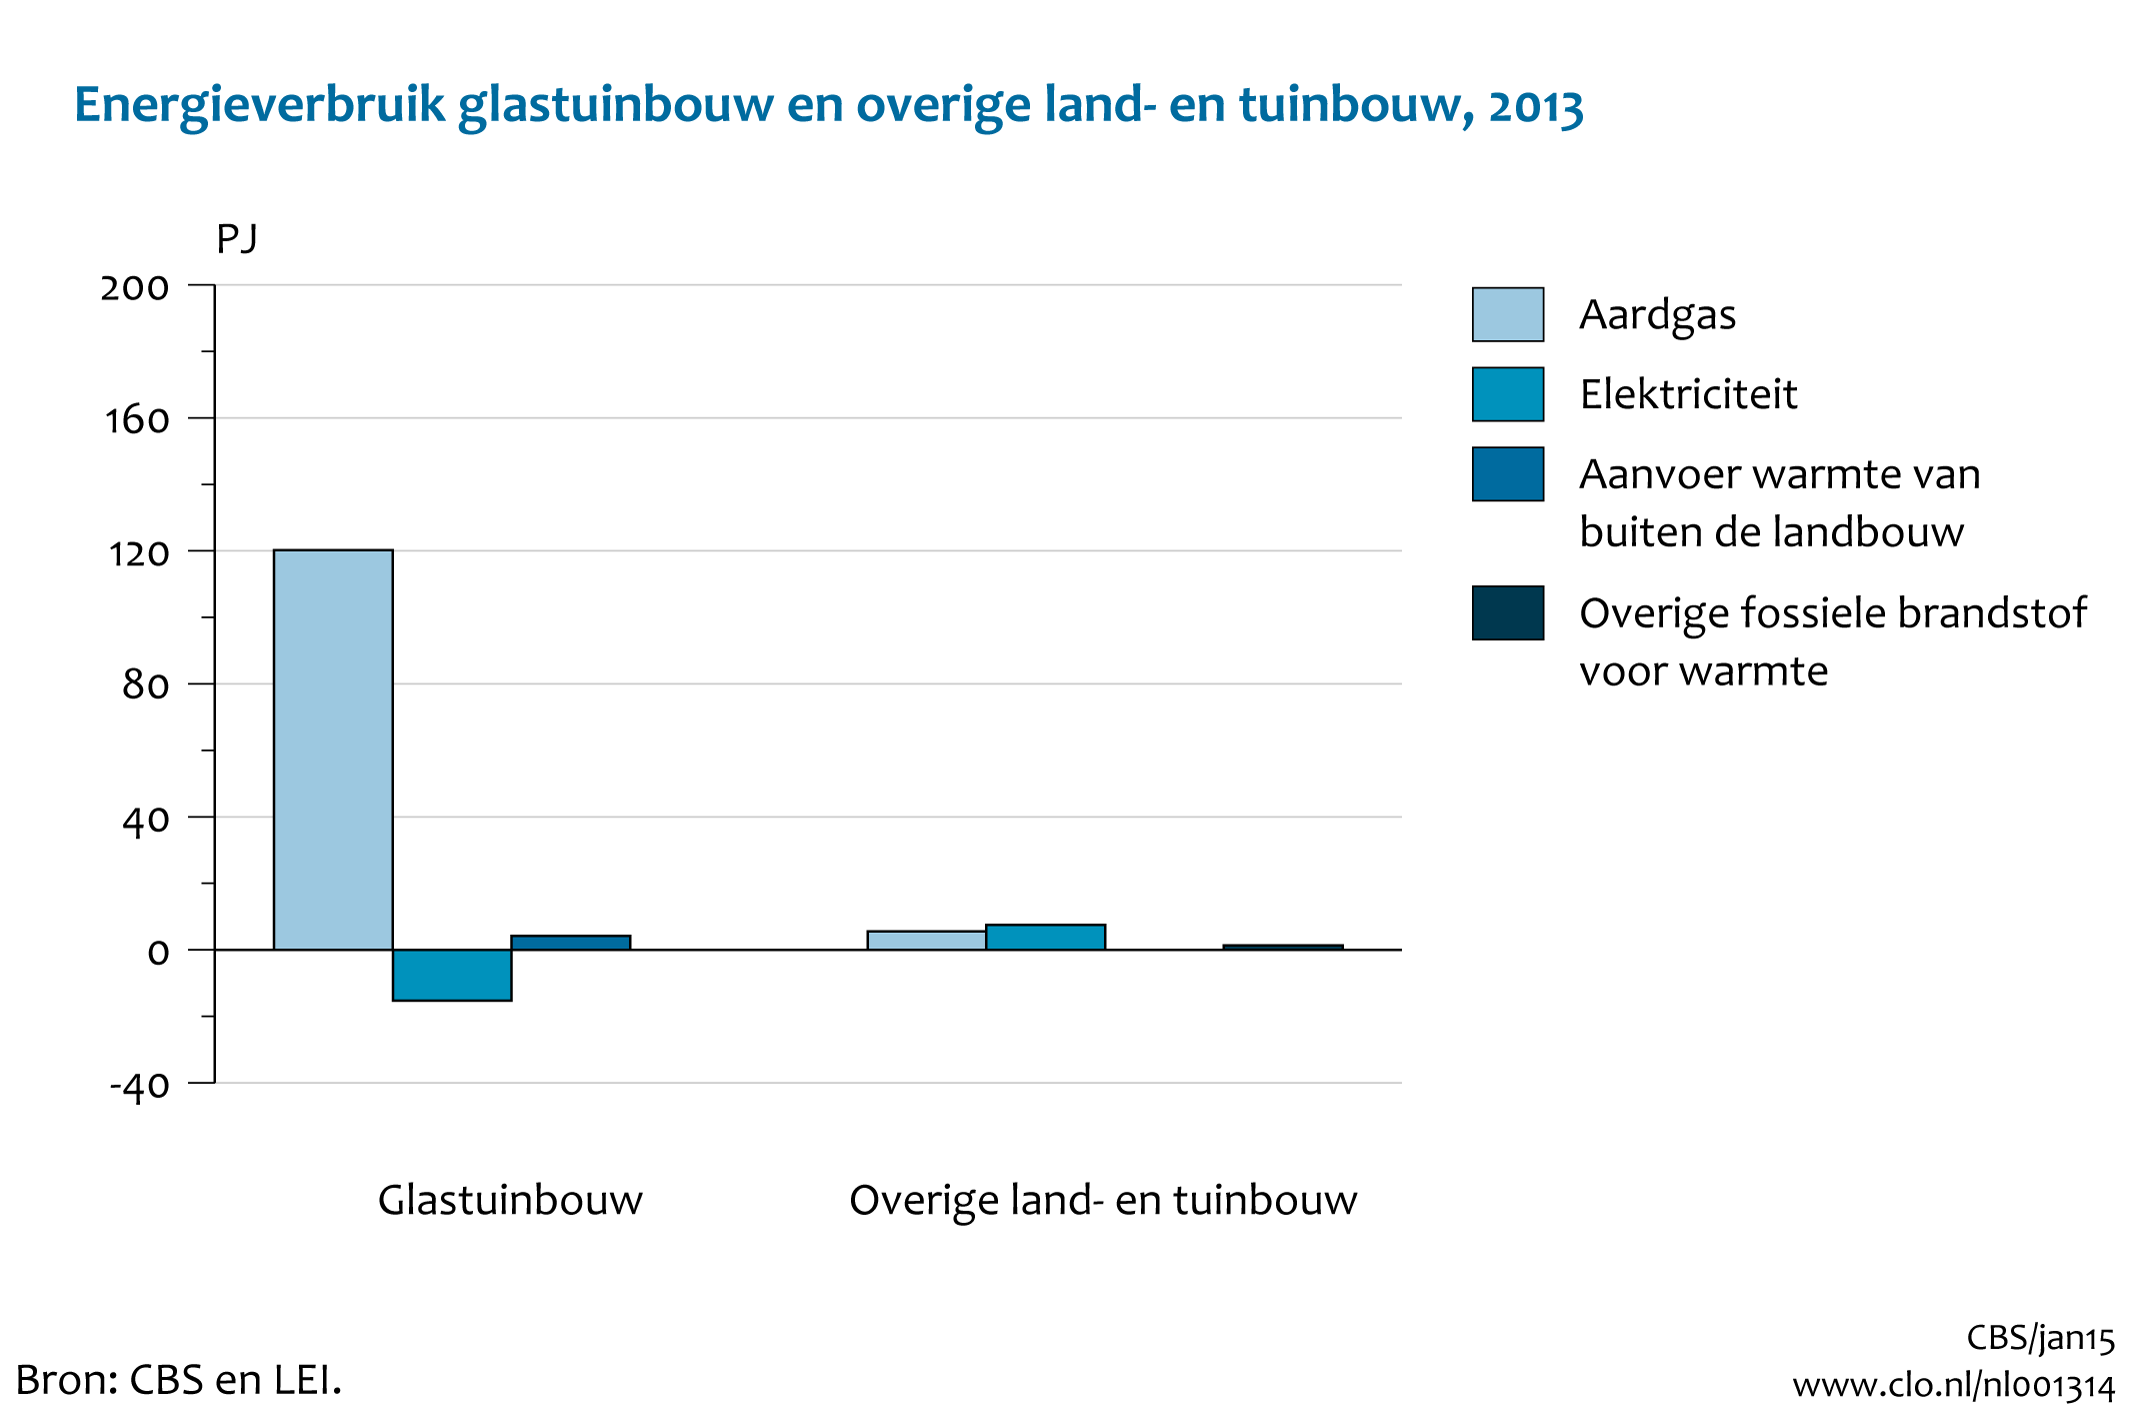 Figuur energieverbruik glastuinbouw en overige land- en tuinbouw 2013. In de rest van de tekst wordt deze figuur uitgebreider uitgelegd.